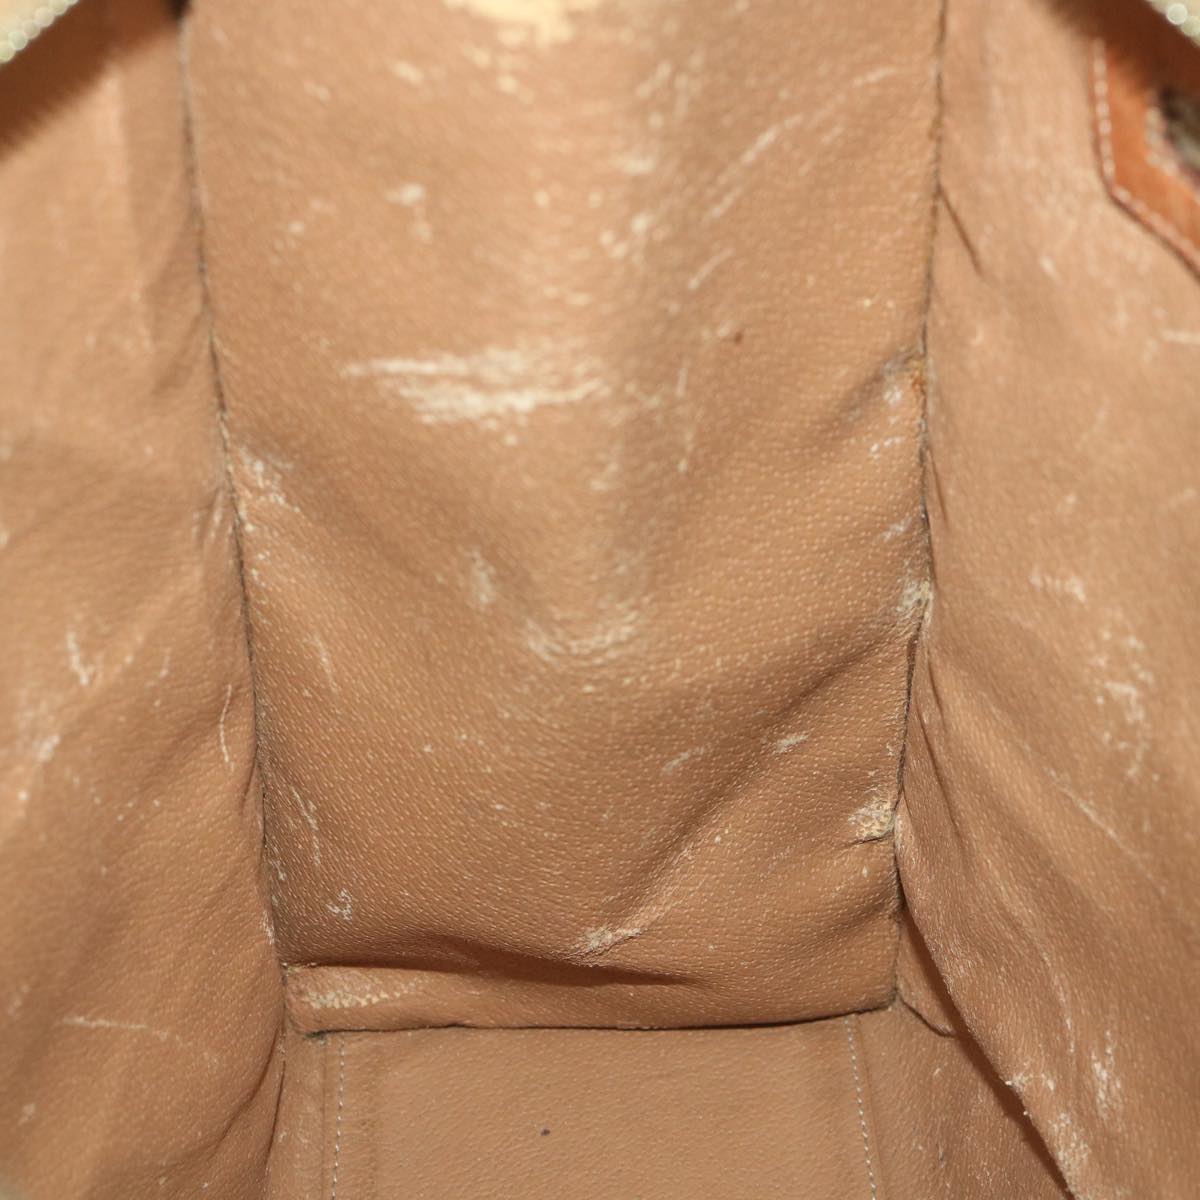 CELINE Macadam Canvas Shoulder Bag PVC Leather Brown Auth bs10227